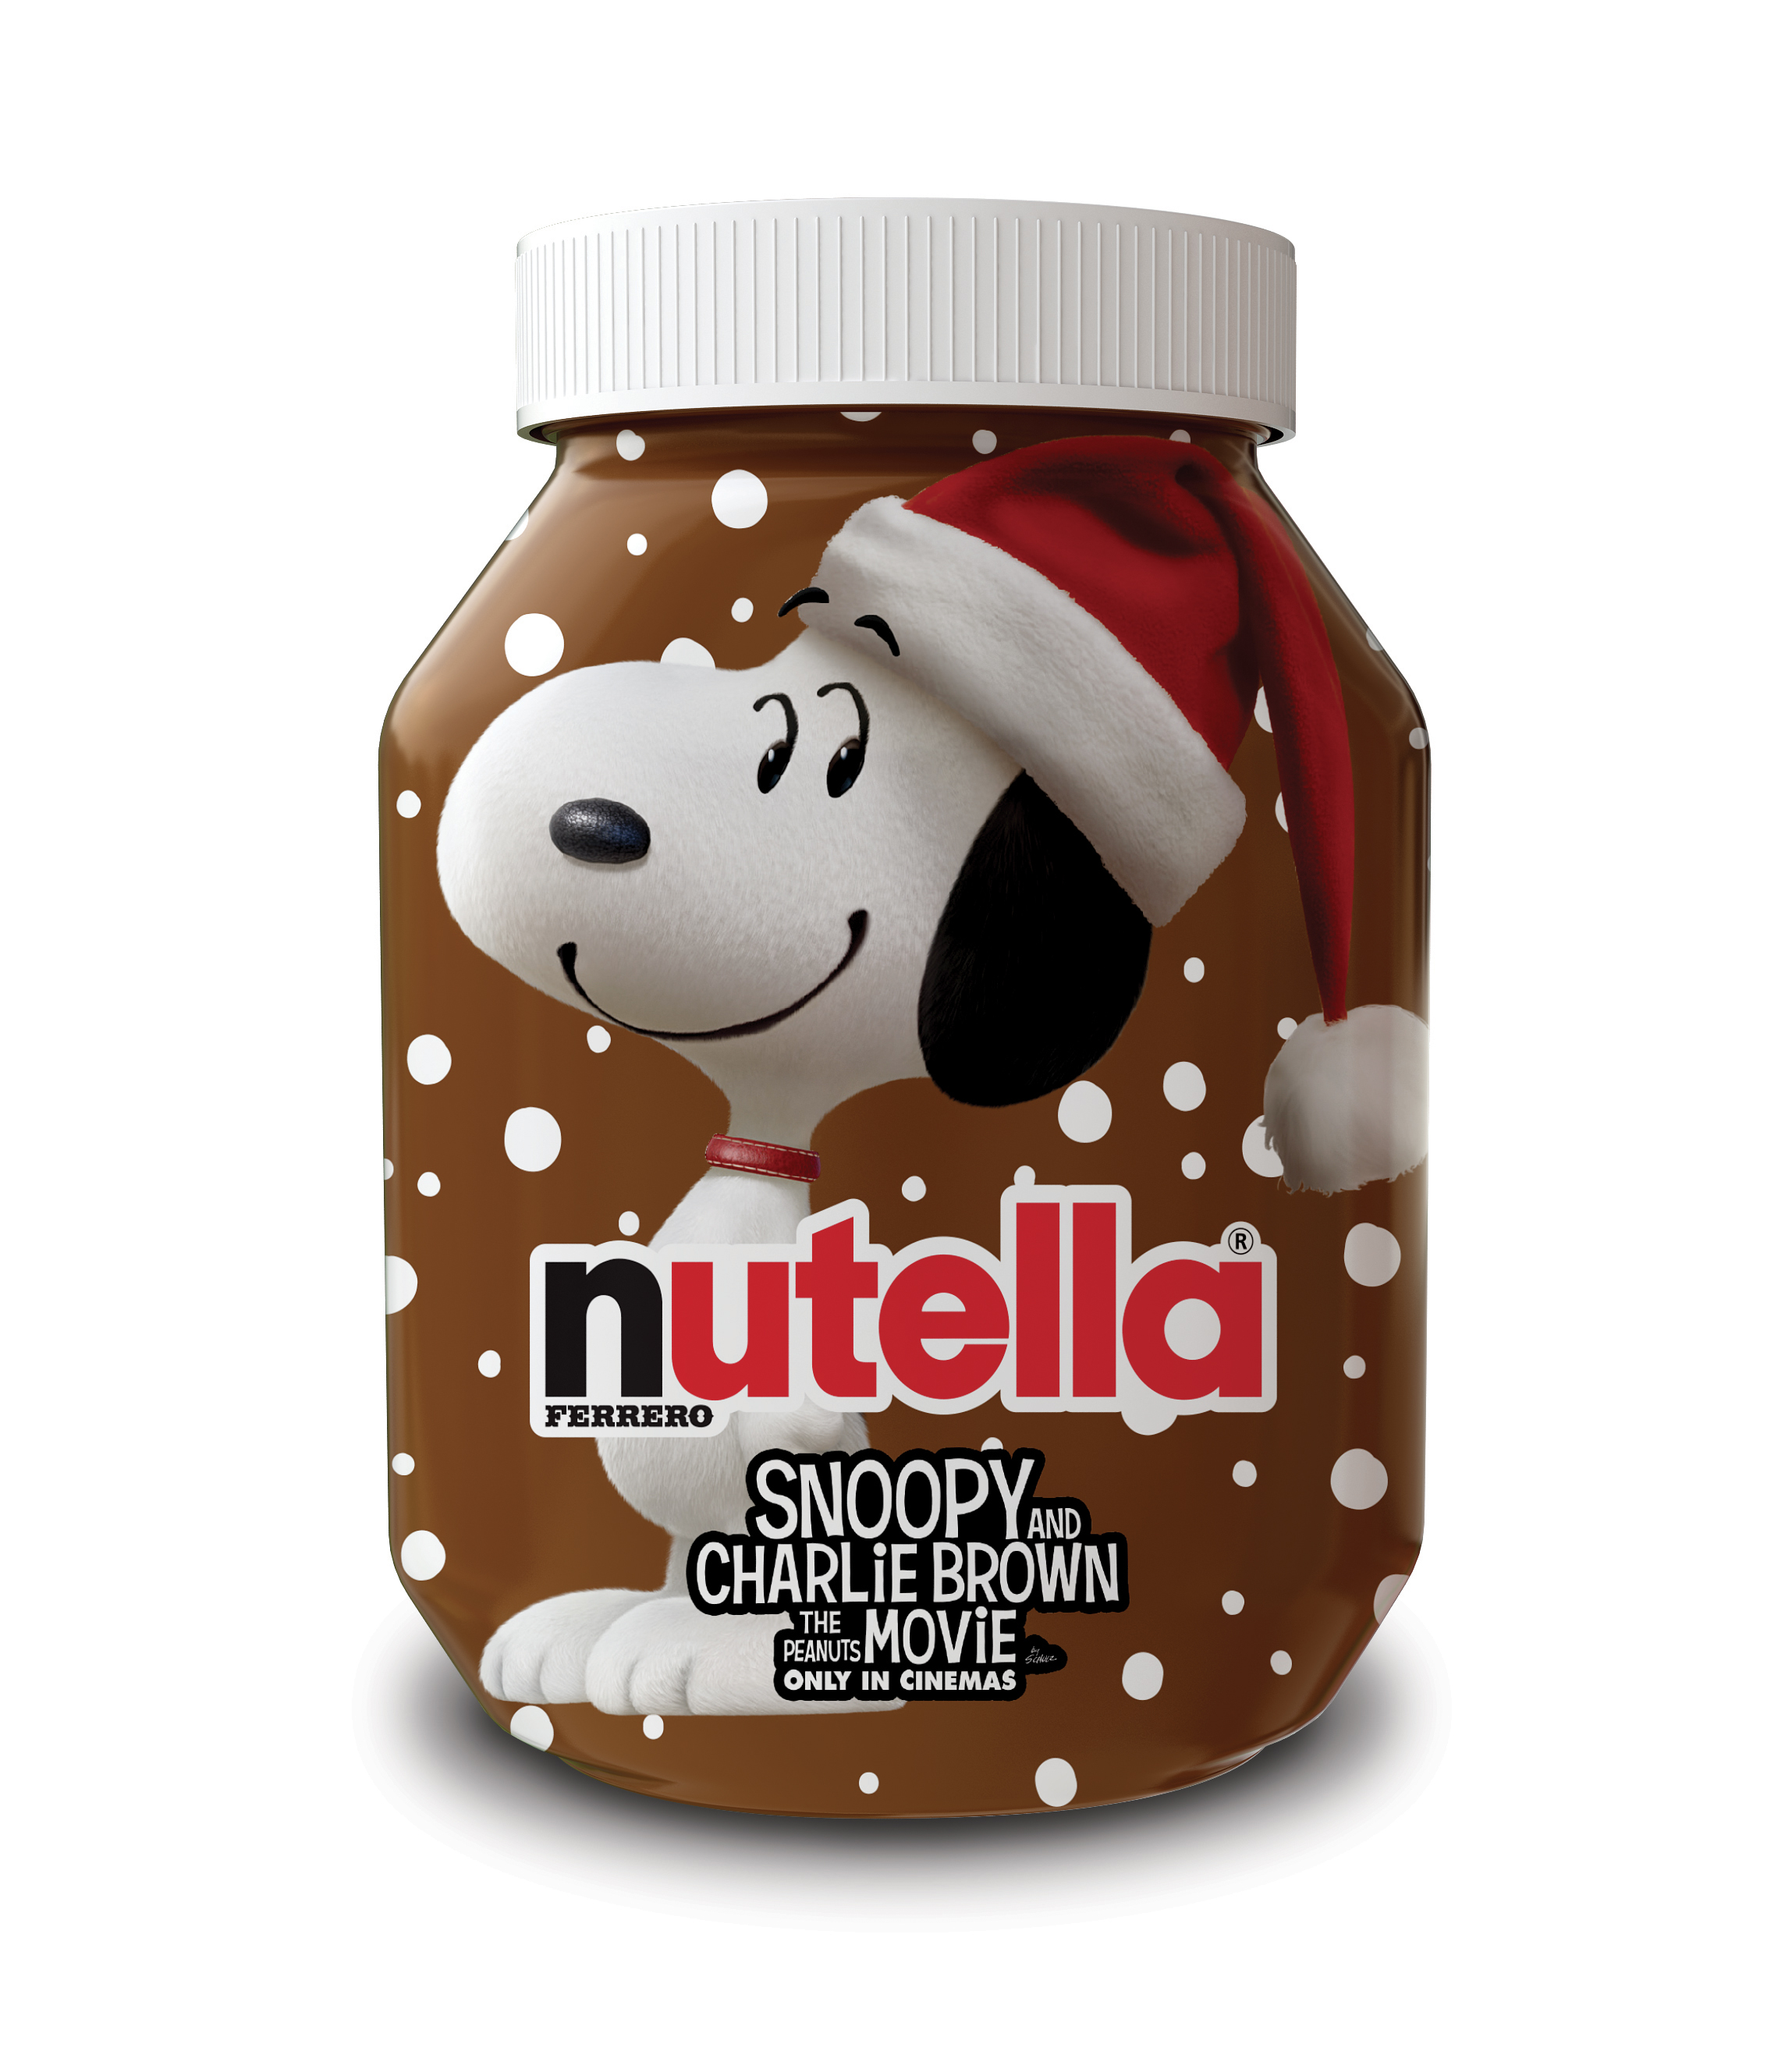 Immagini Natale Snoopy.Le Proposte Nutella Special Edition Per Il Natale 2015 Effetto Food